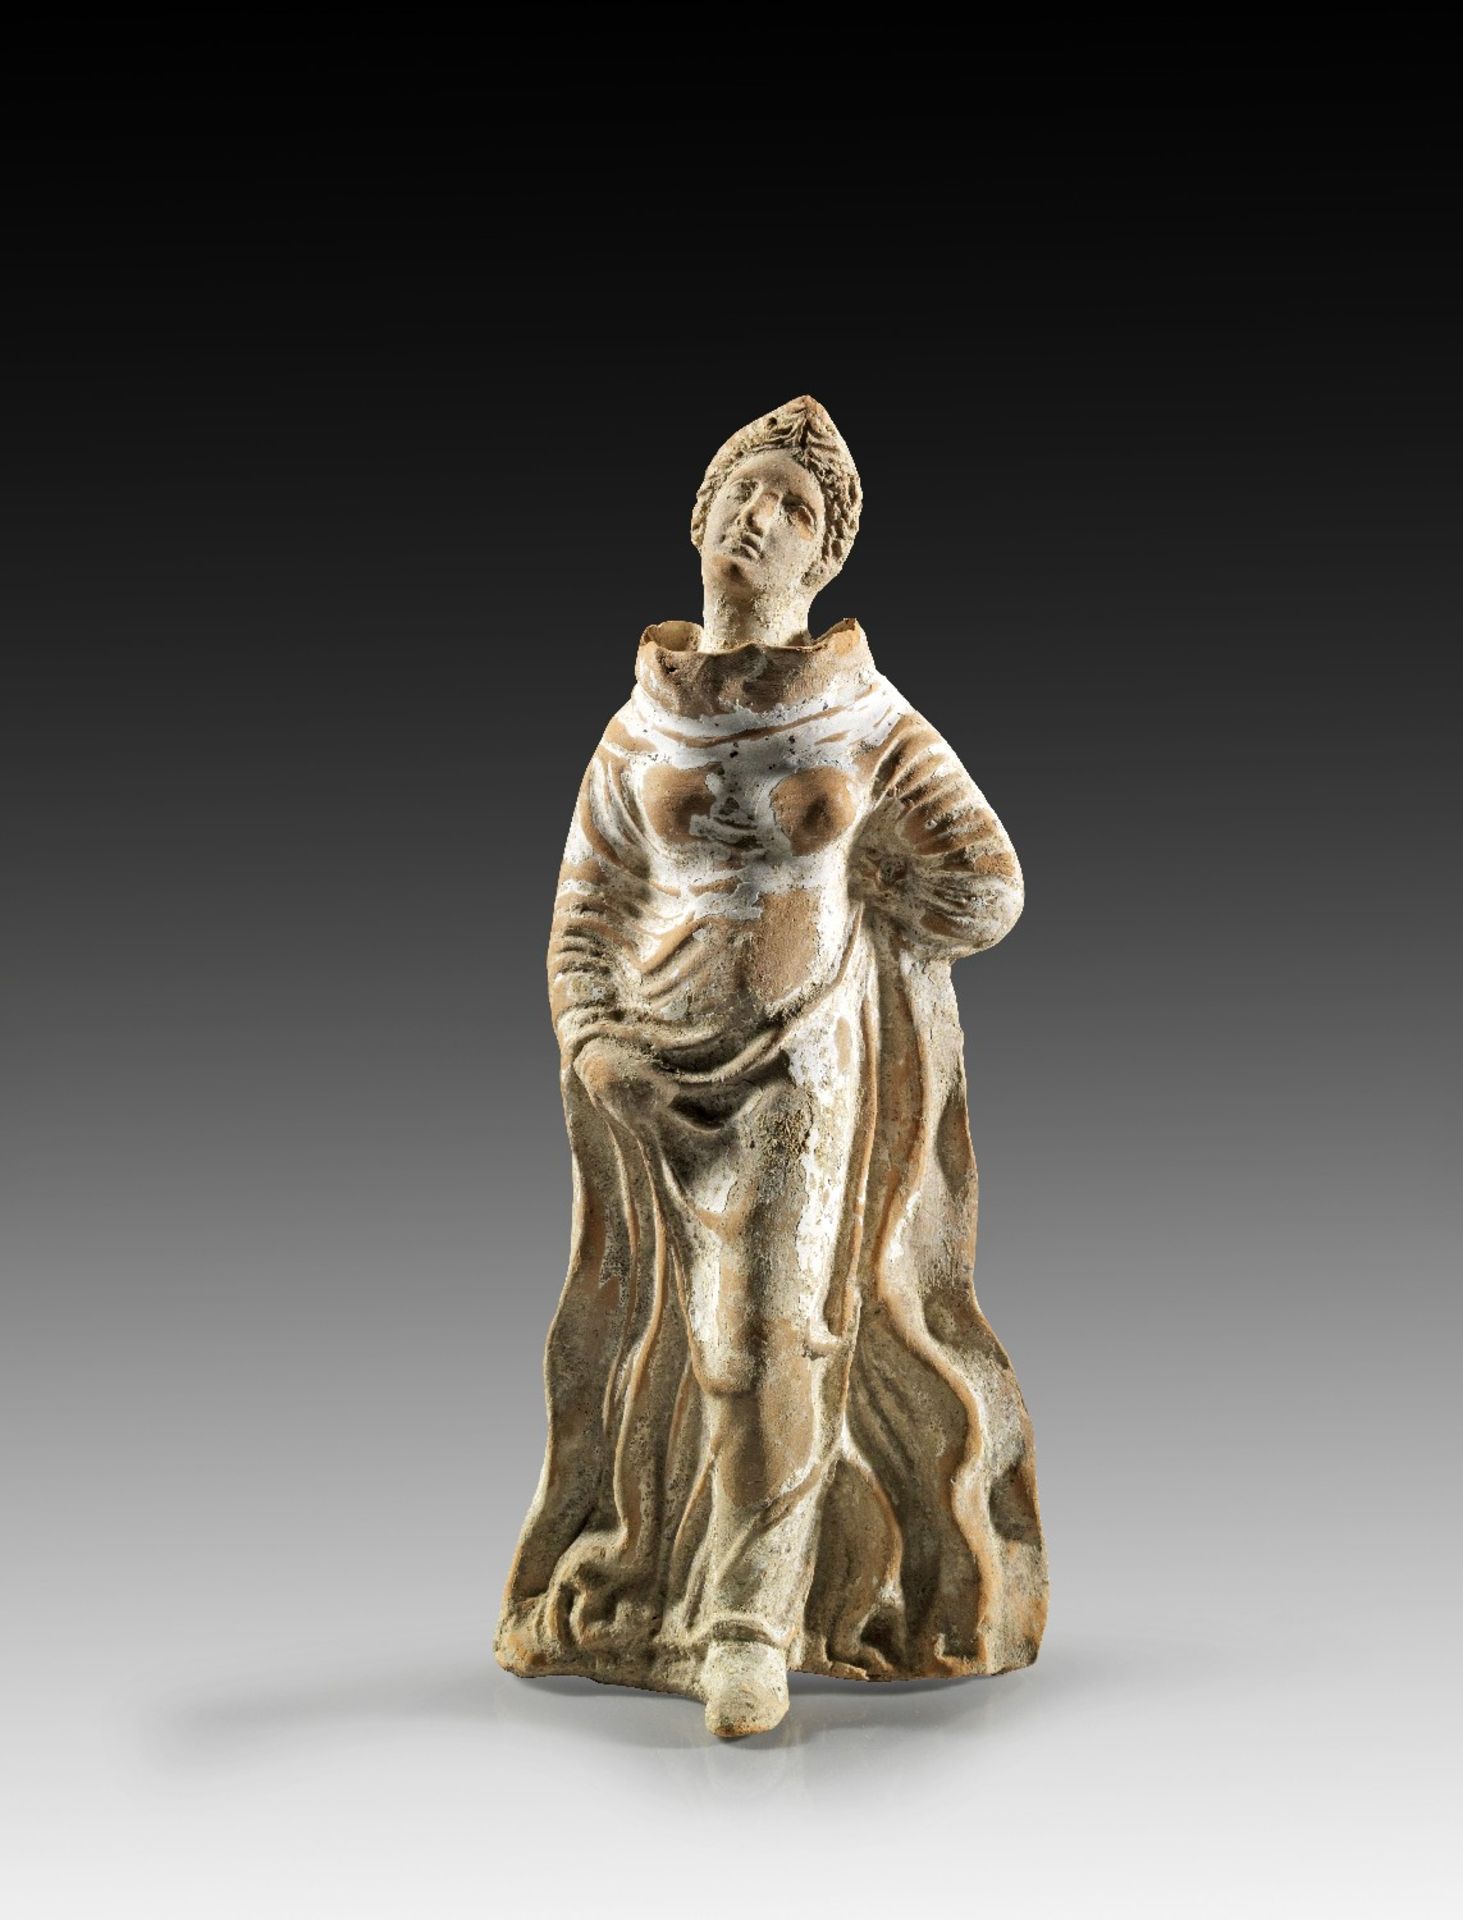 Tänzerin. Griechisch, 3. Jh. v. Chr. H 21cm. Rötlicher Ton mit weißem Überzug. Figur einer tanzenden